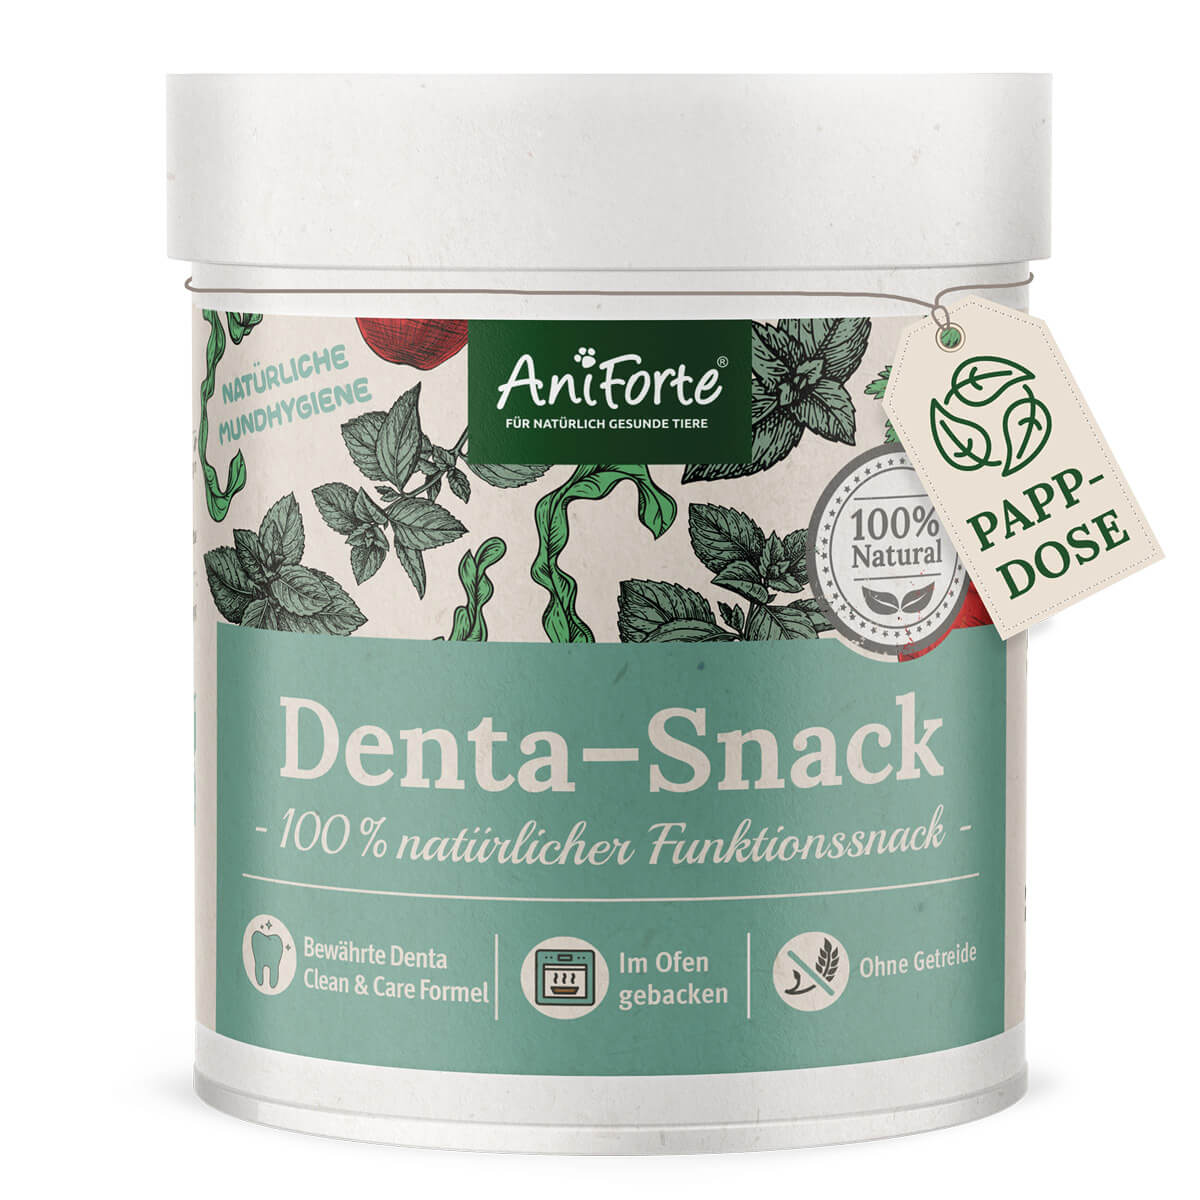 Denta-Snack - AniForte